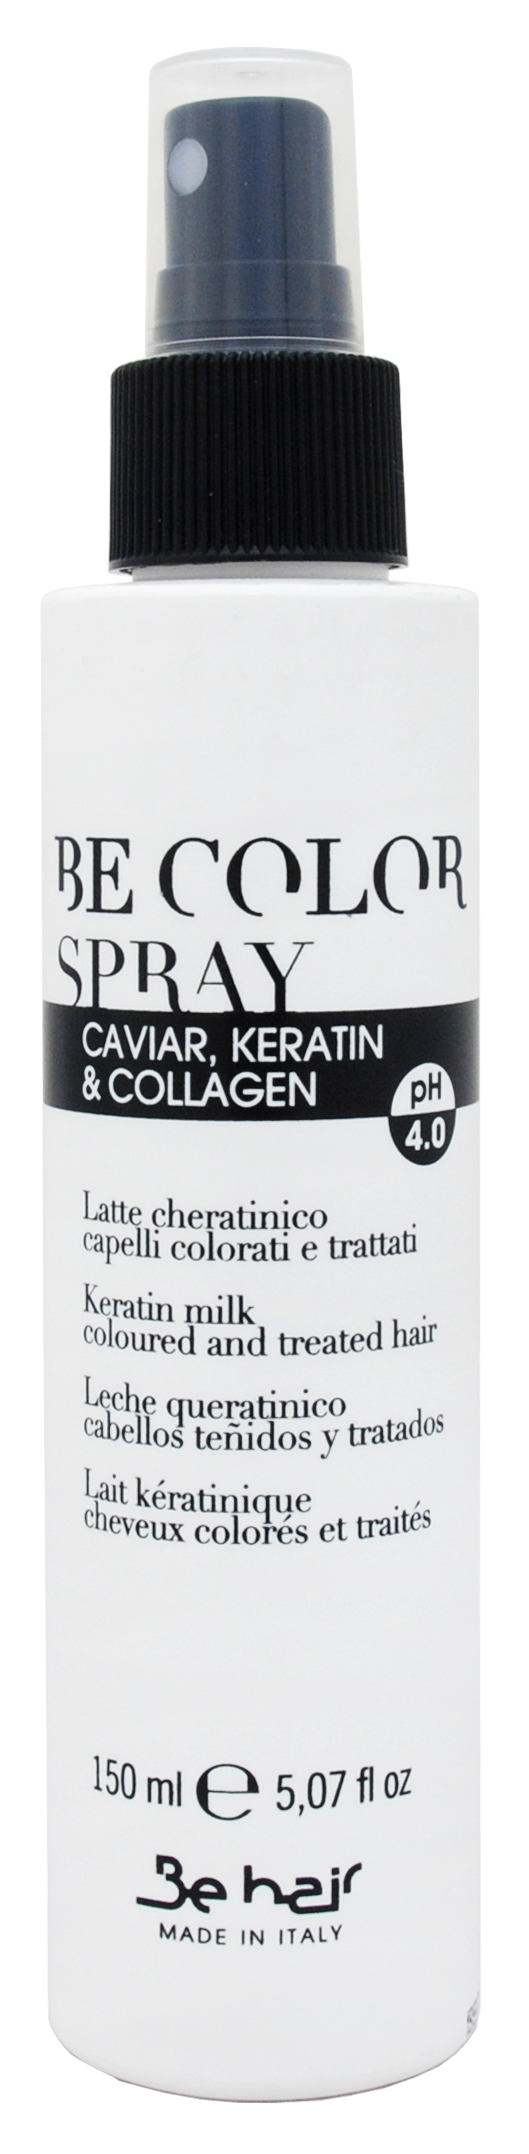 Be Hair Молочко с кератином для окрашенных и поврежденных волос, 150 мл (Be Hair, Be Color) цена и фото